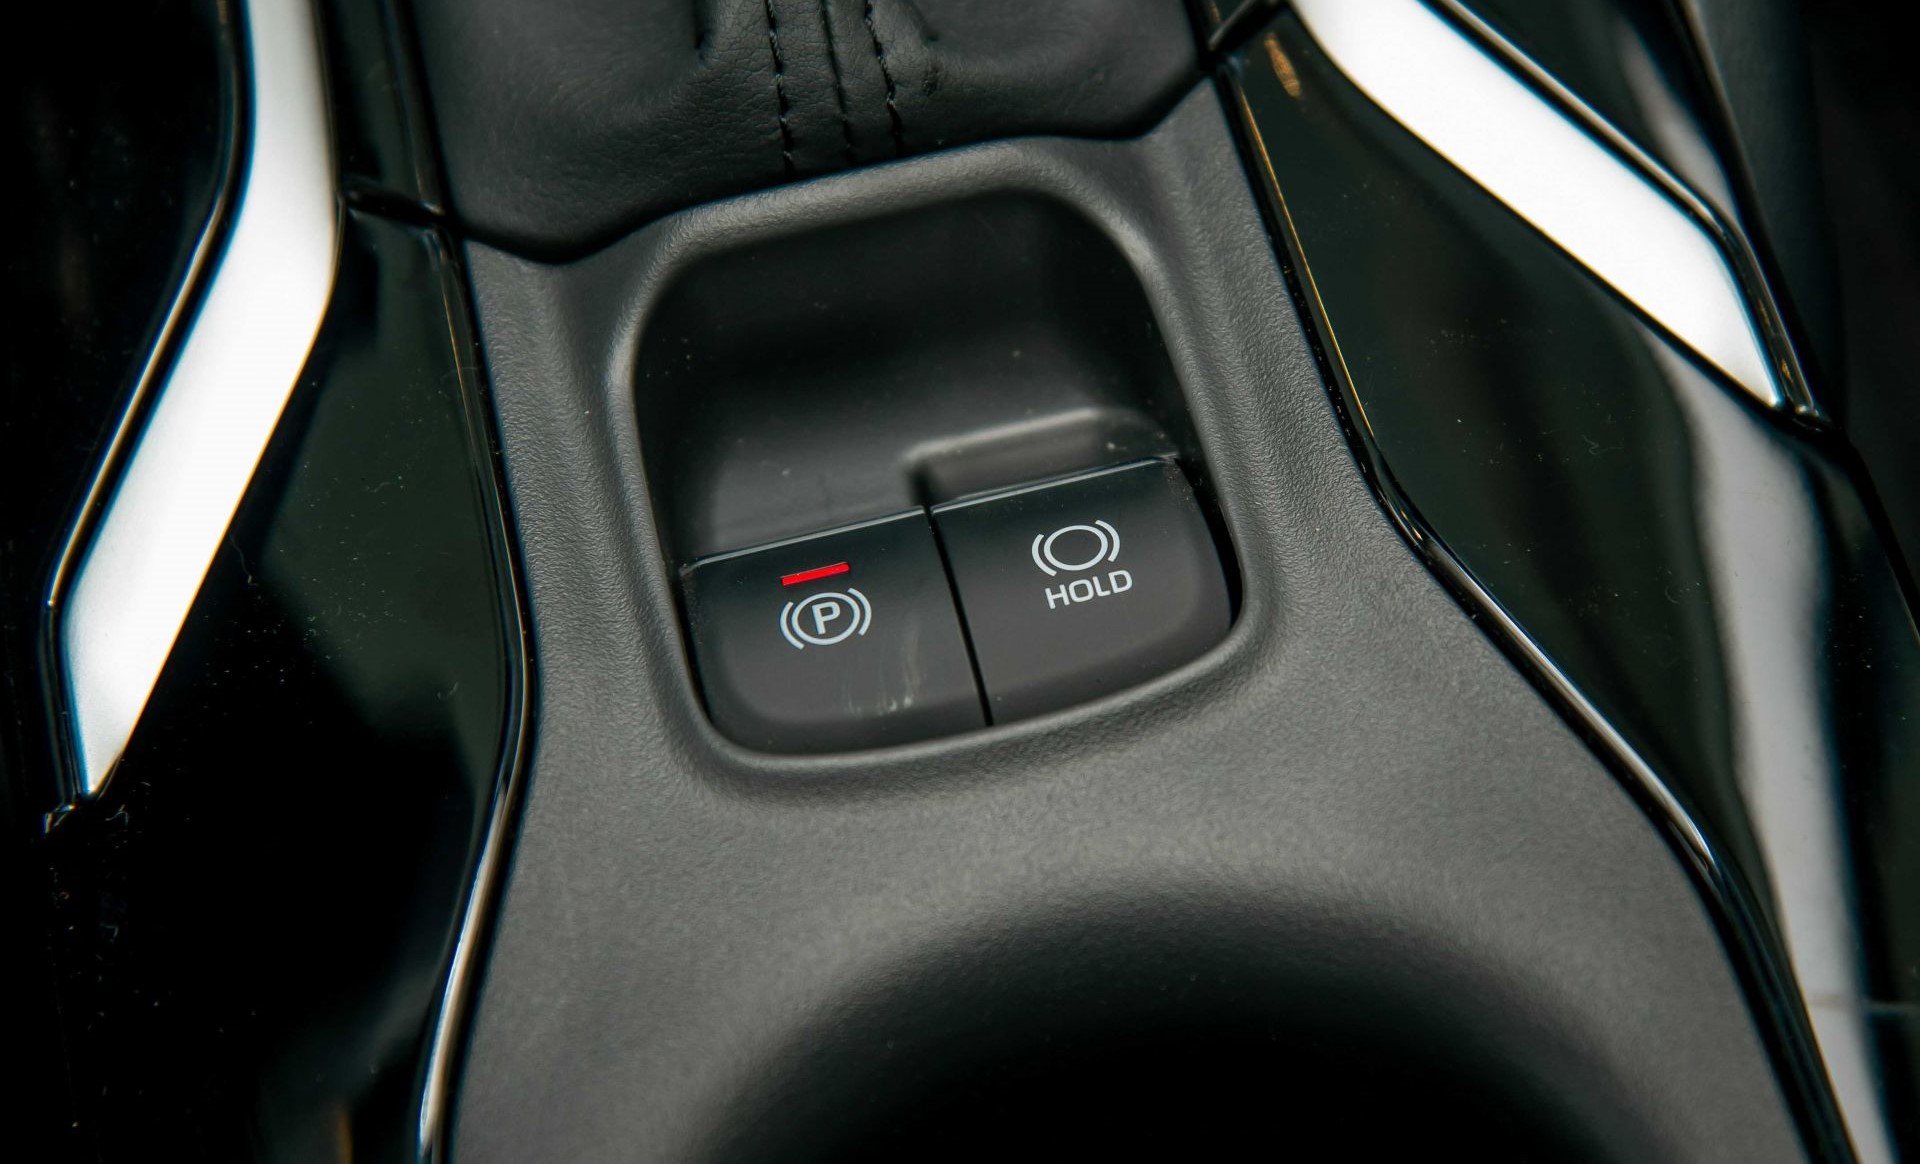 Phanh tay điện tử và chức năng giữ phanh Auto Hold trên Toyota Altis